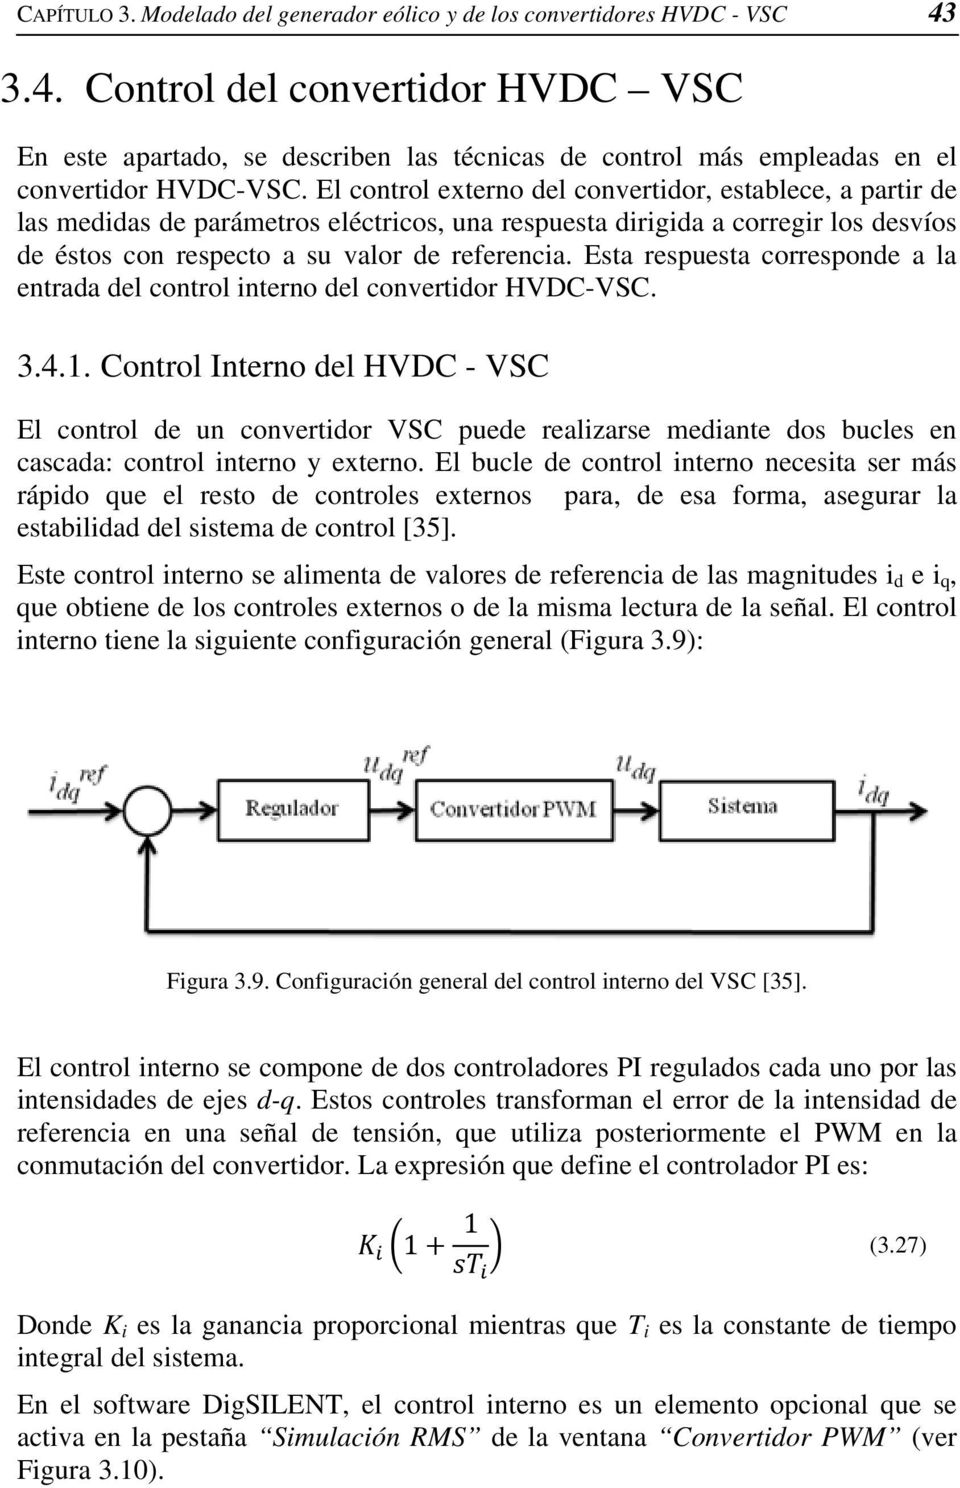 El control externo del convertidor, establece, a partir de las medidas de parámetros eléctricos, una respuesta dirigida a corregir los desvíos de éstos con respecto a su valor de referencia.